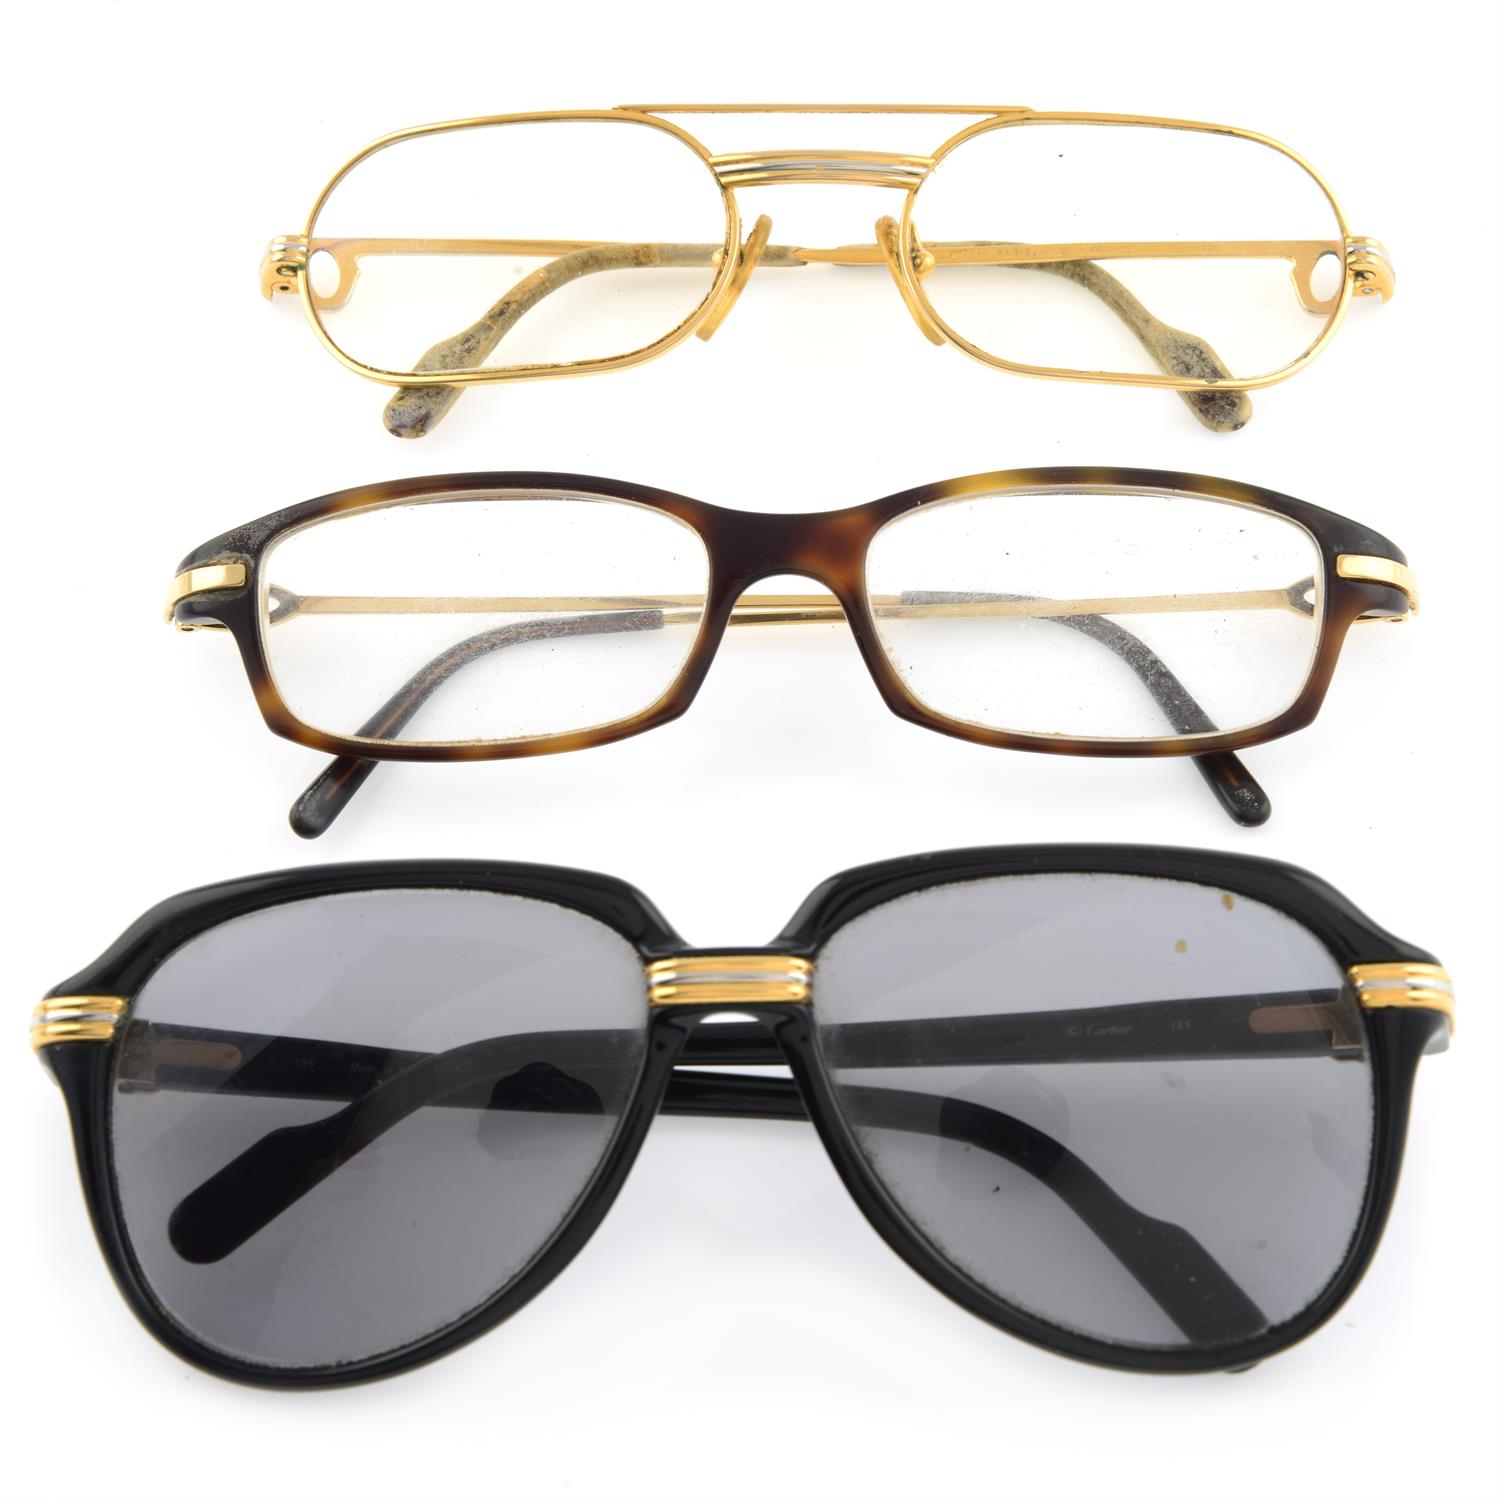 Cartier - pair of prescription sunglasses and two pairs of prescription glasses.